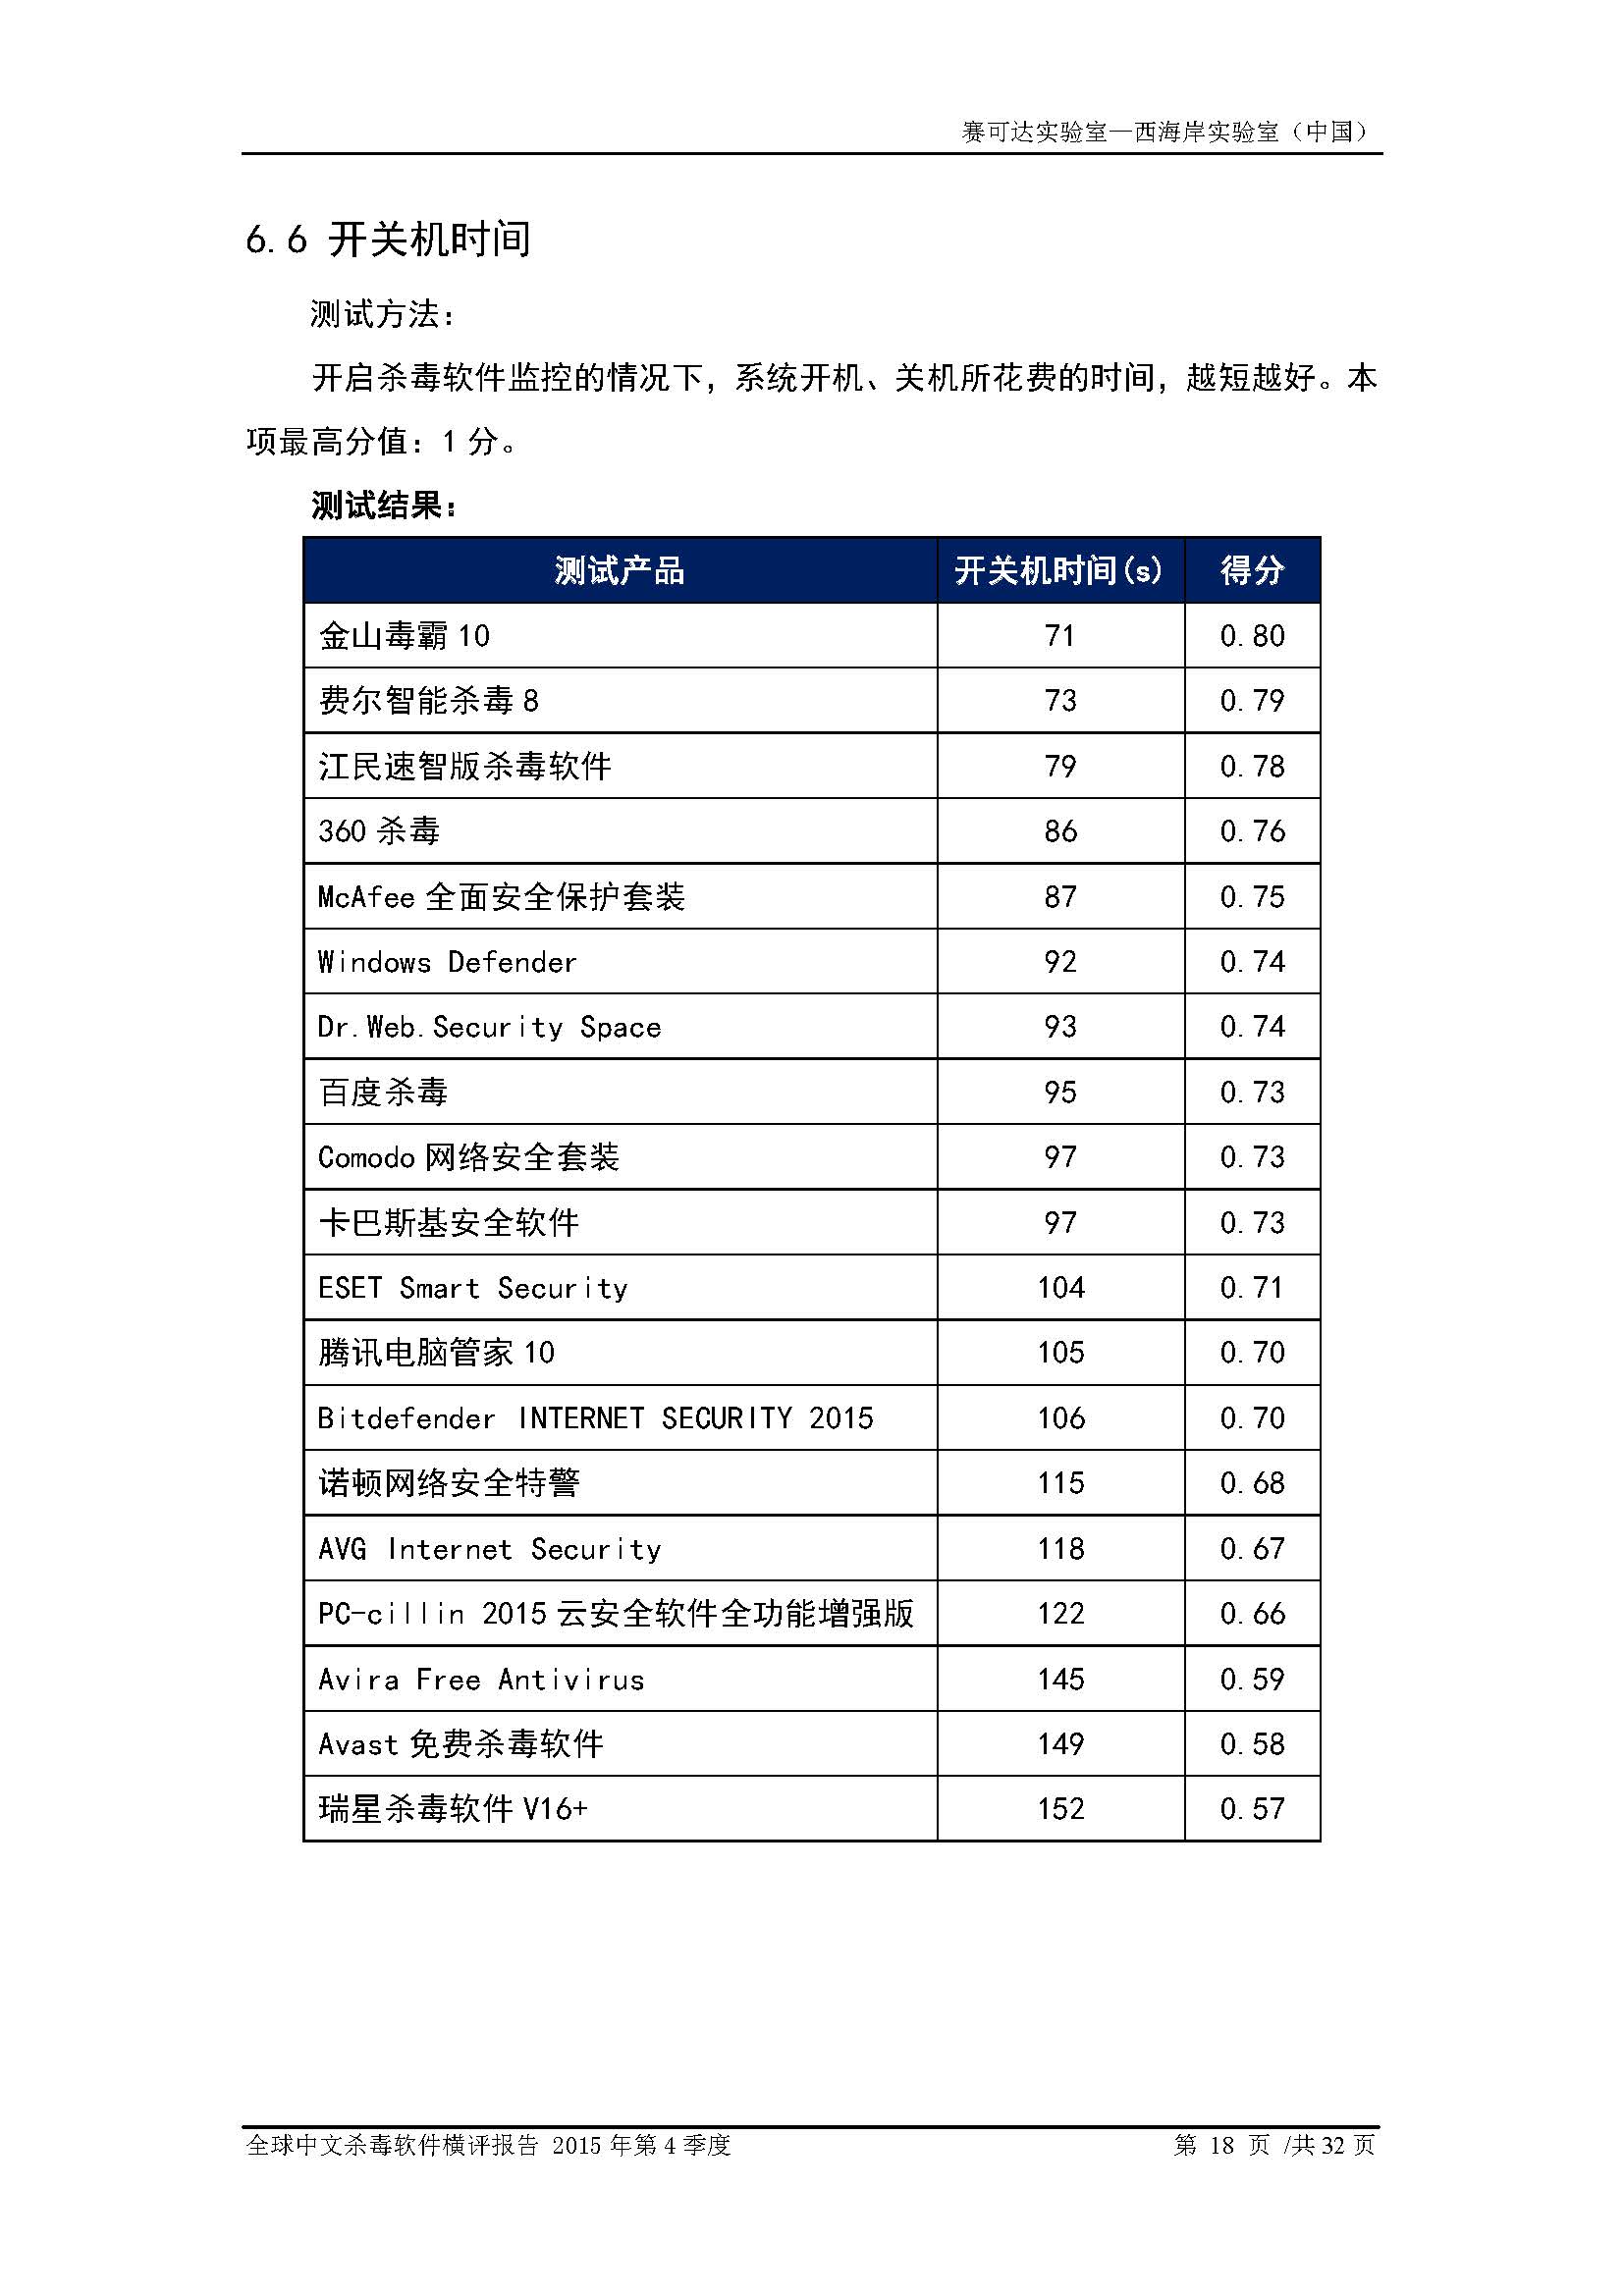 中文PC杀毒软件横评测试报告- Windows 8.1【中文版】.pdf (_Page_20.jpg